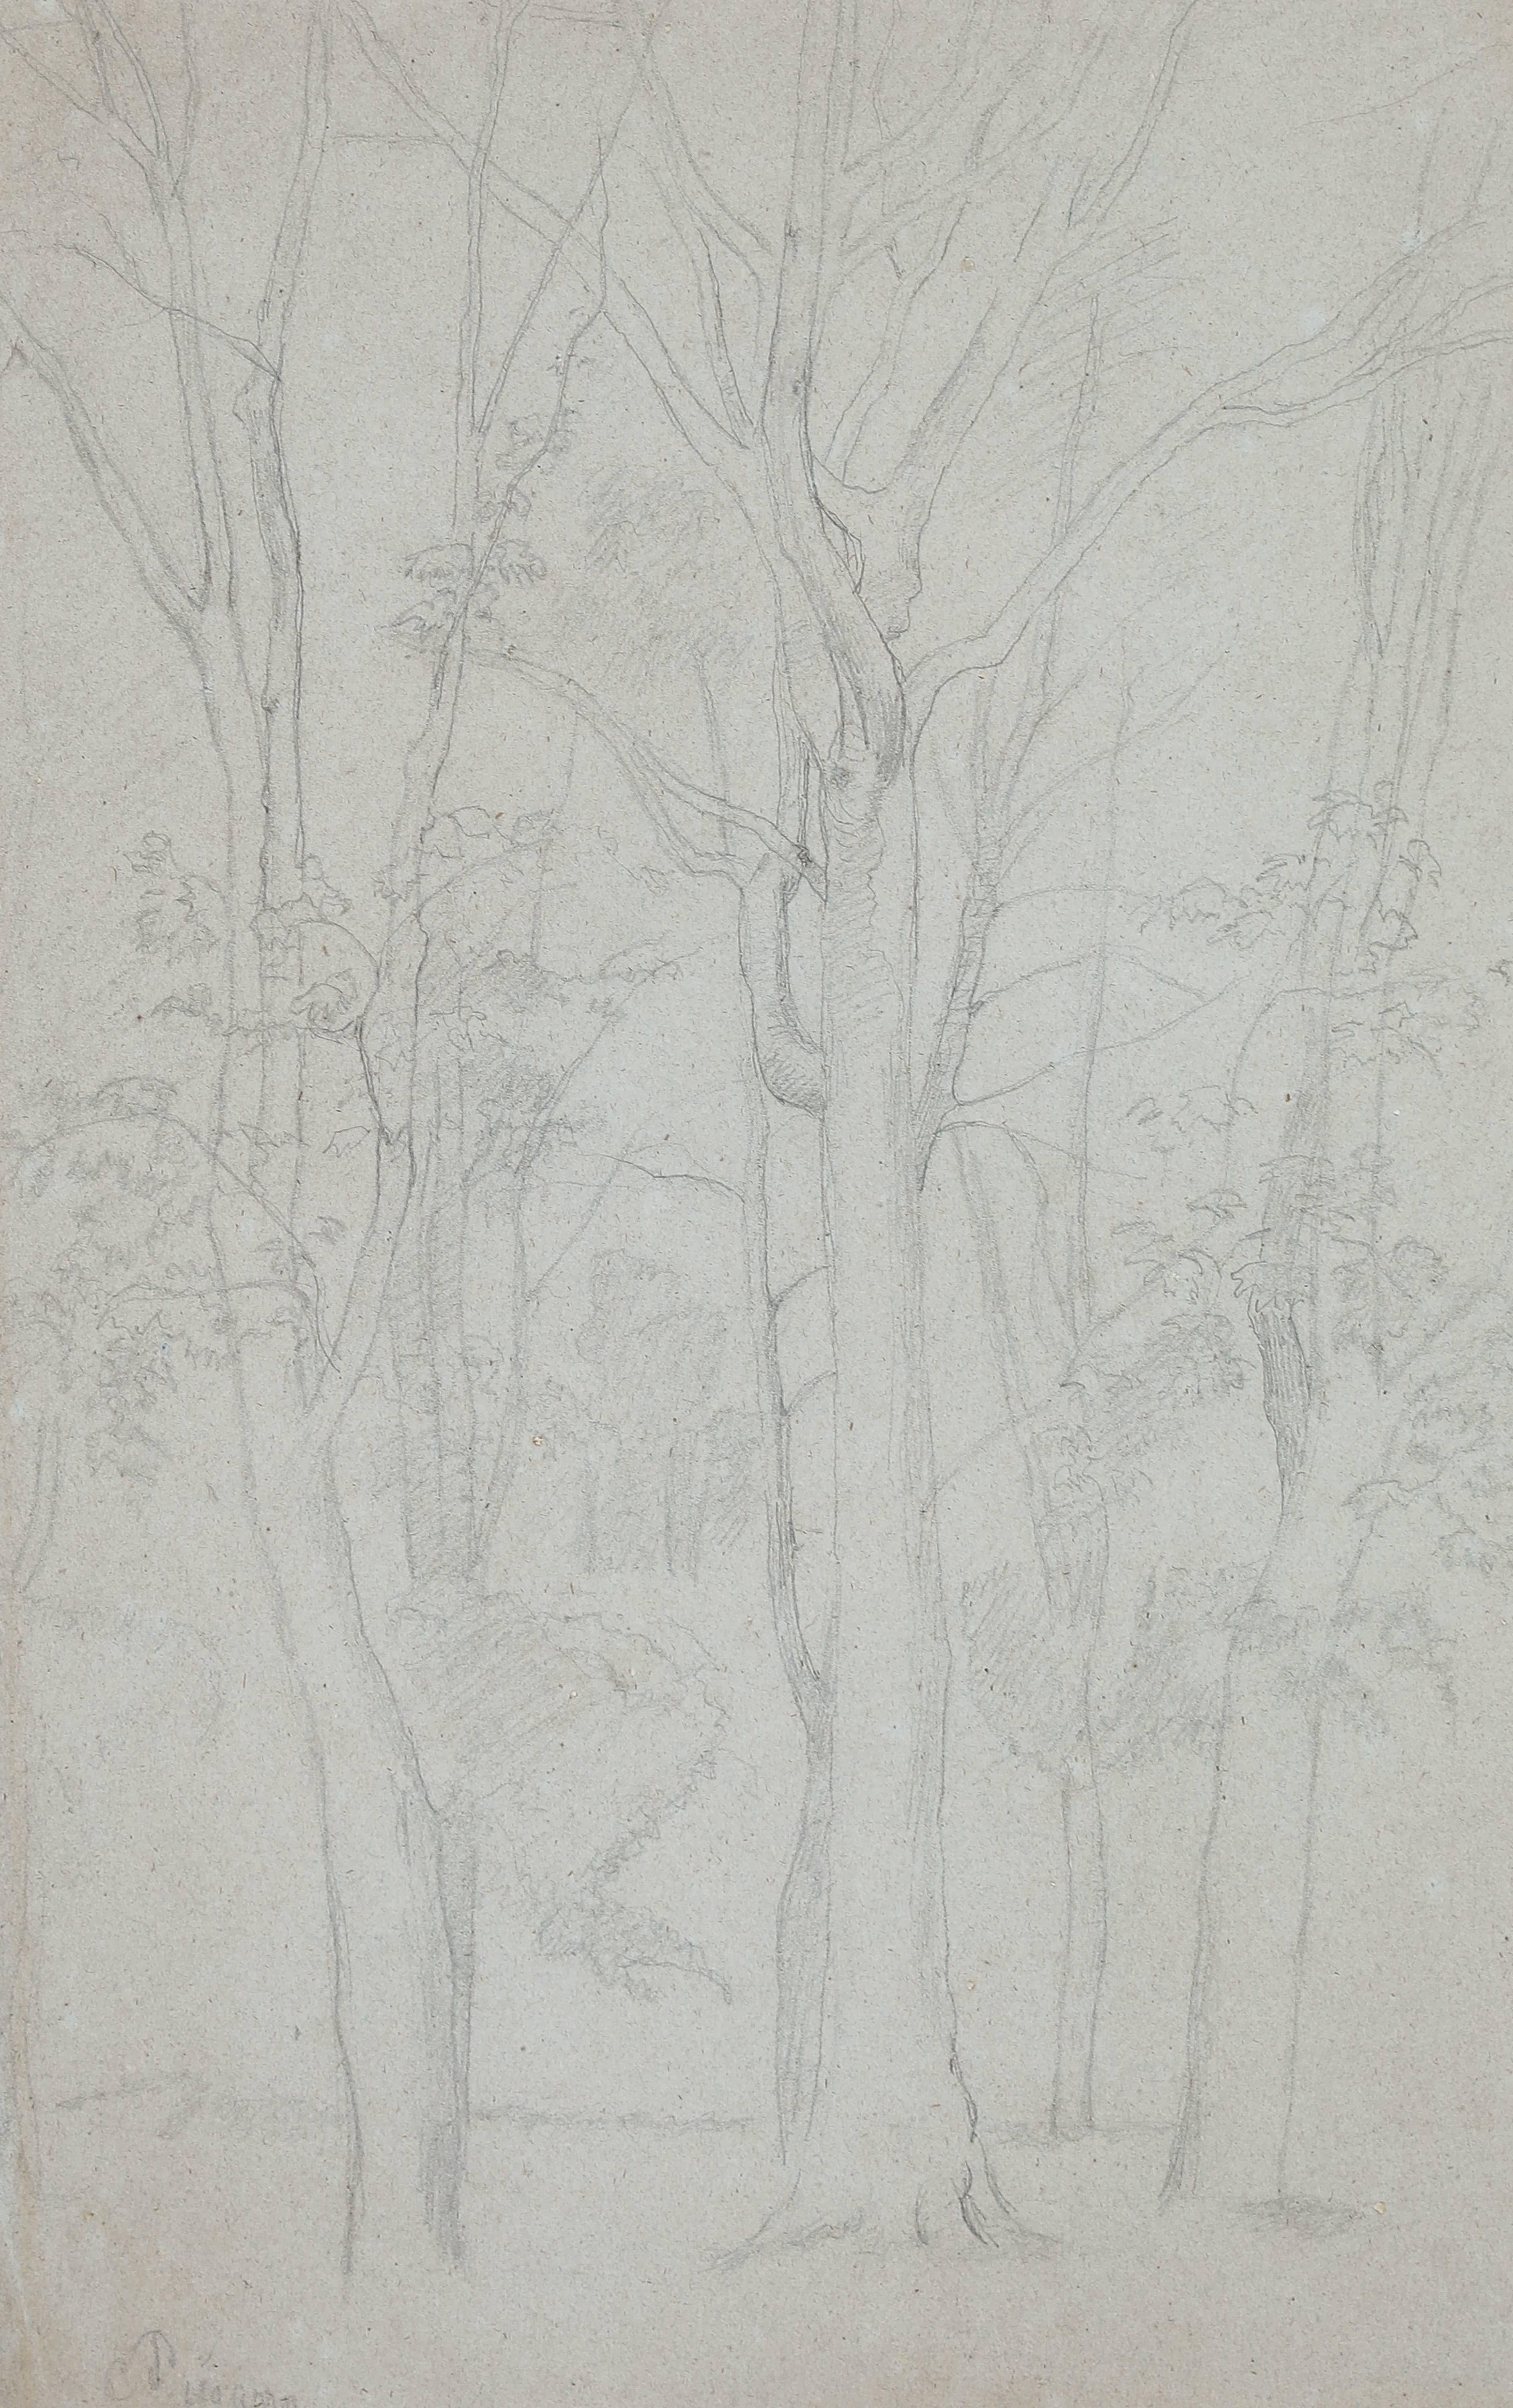 Arbres von Camille Pissarro – Bleistift auf Papier